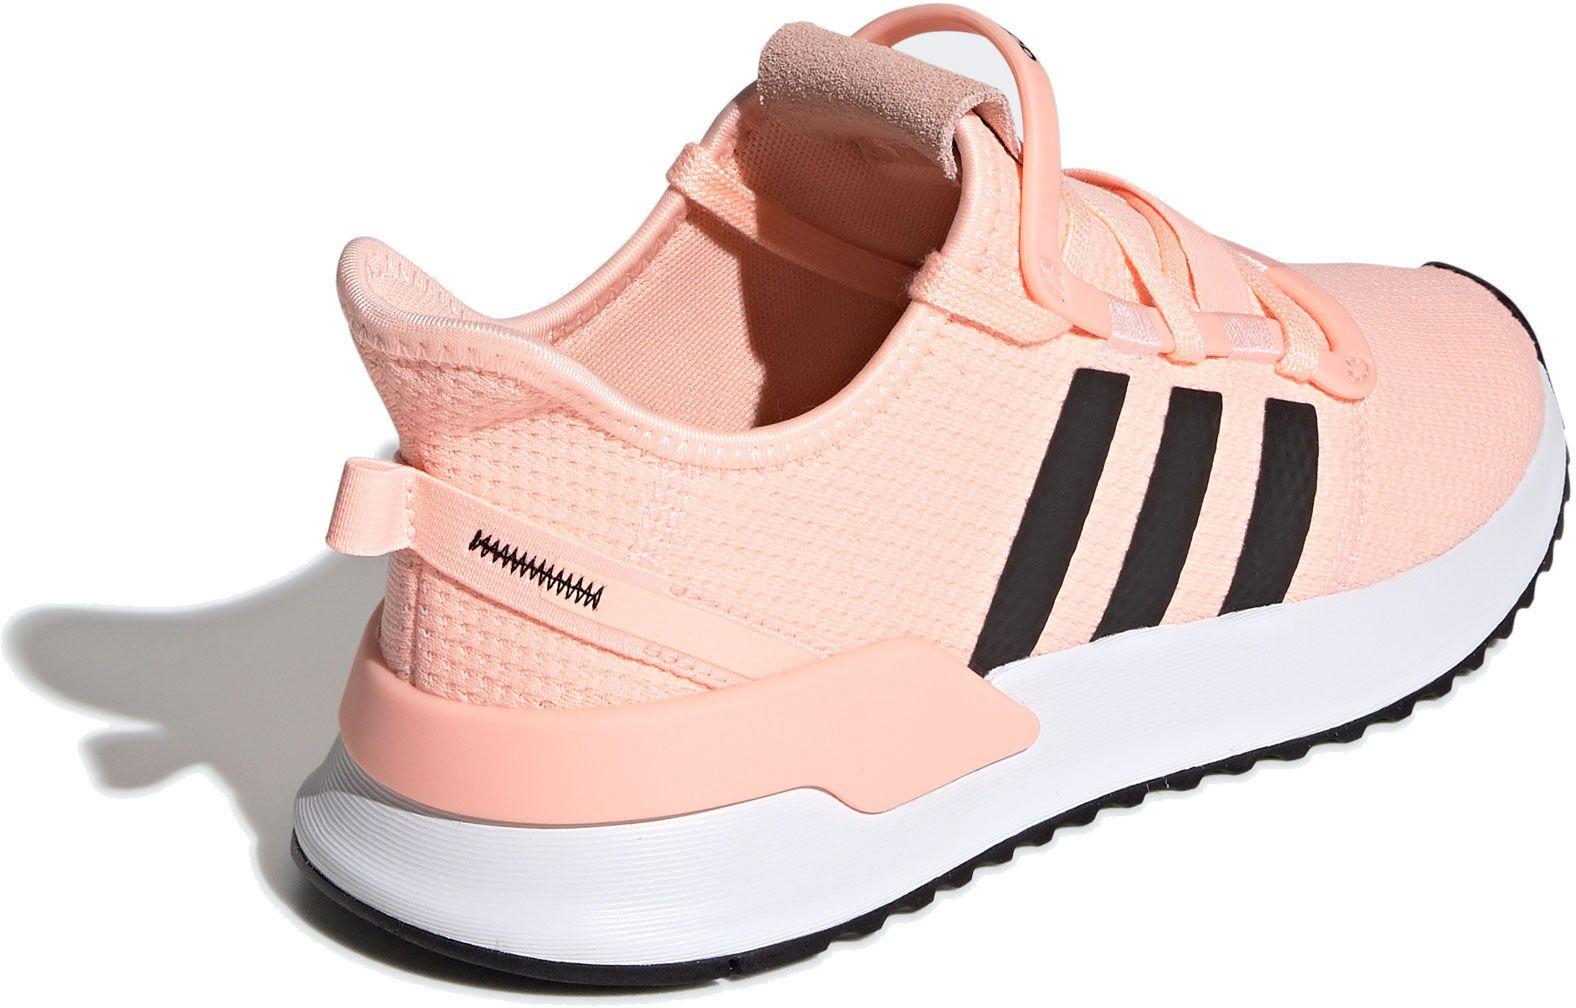 adidas peach running shoes